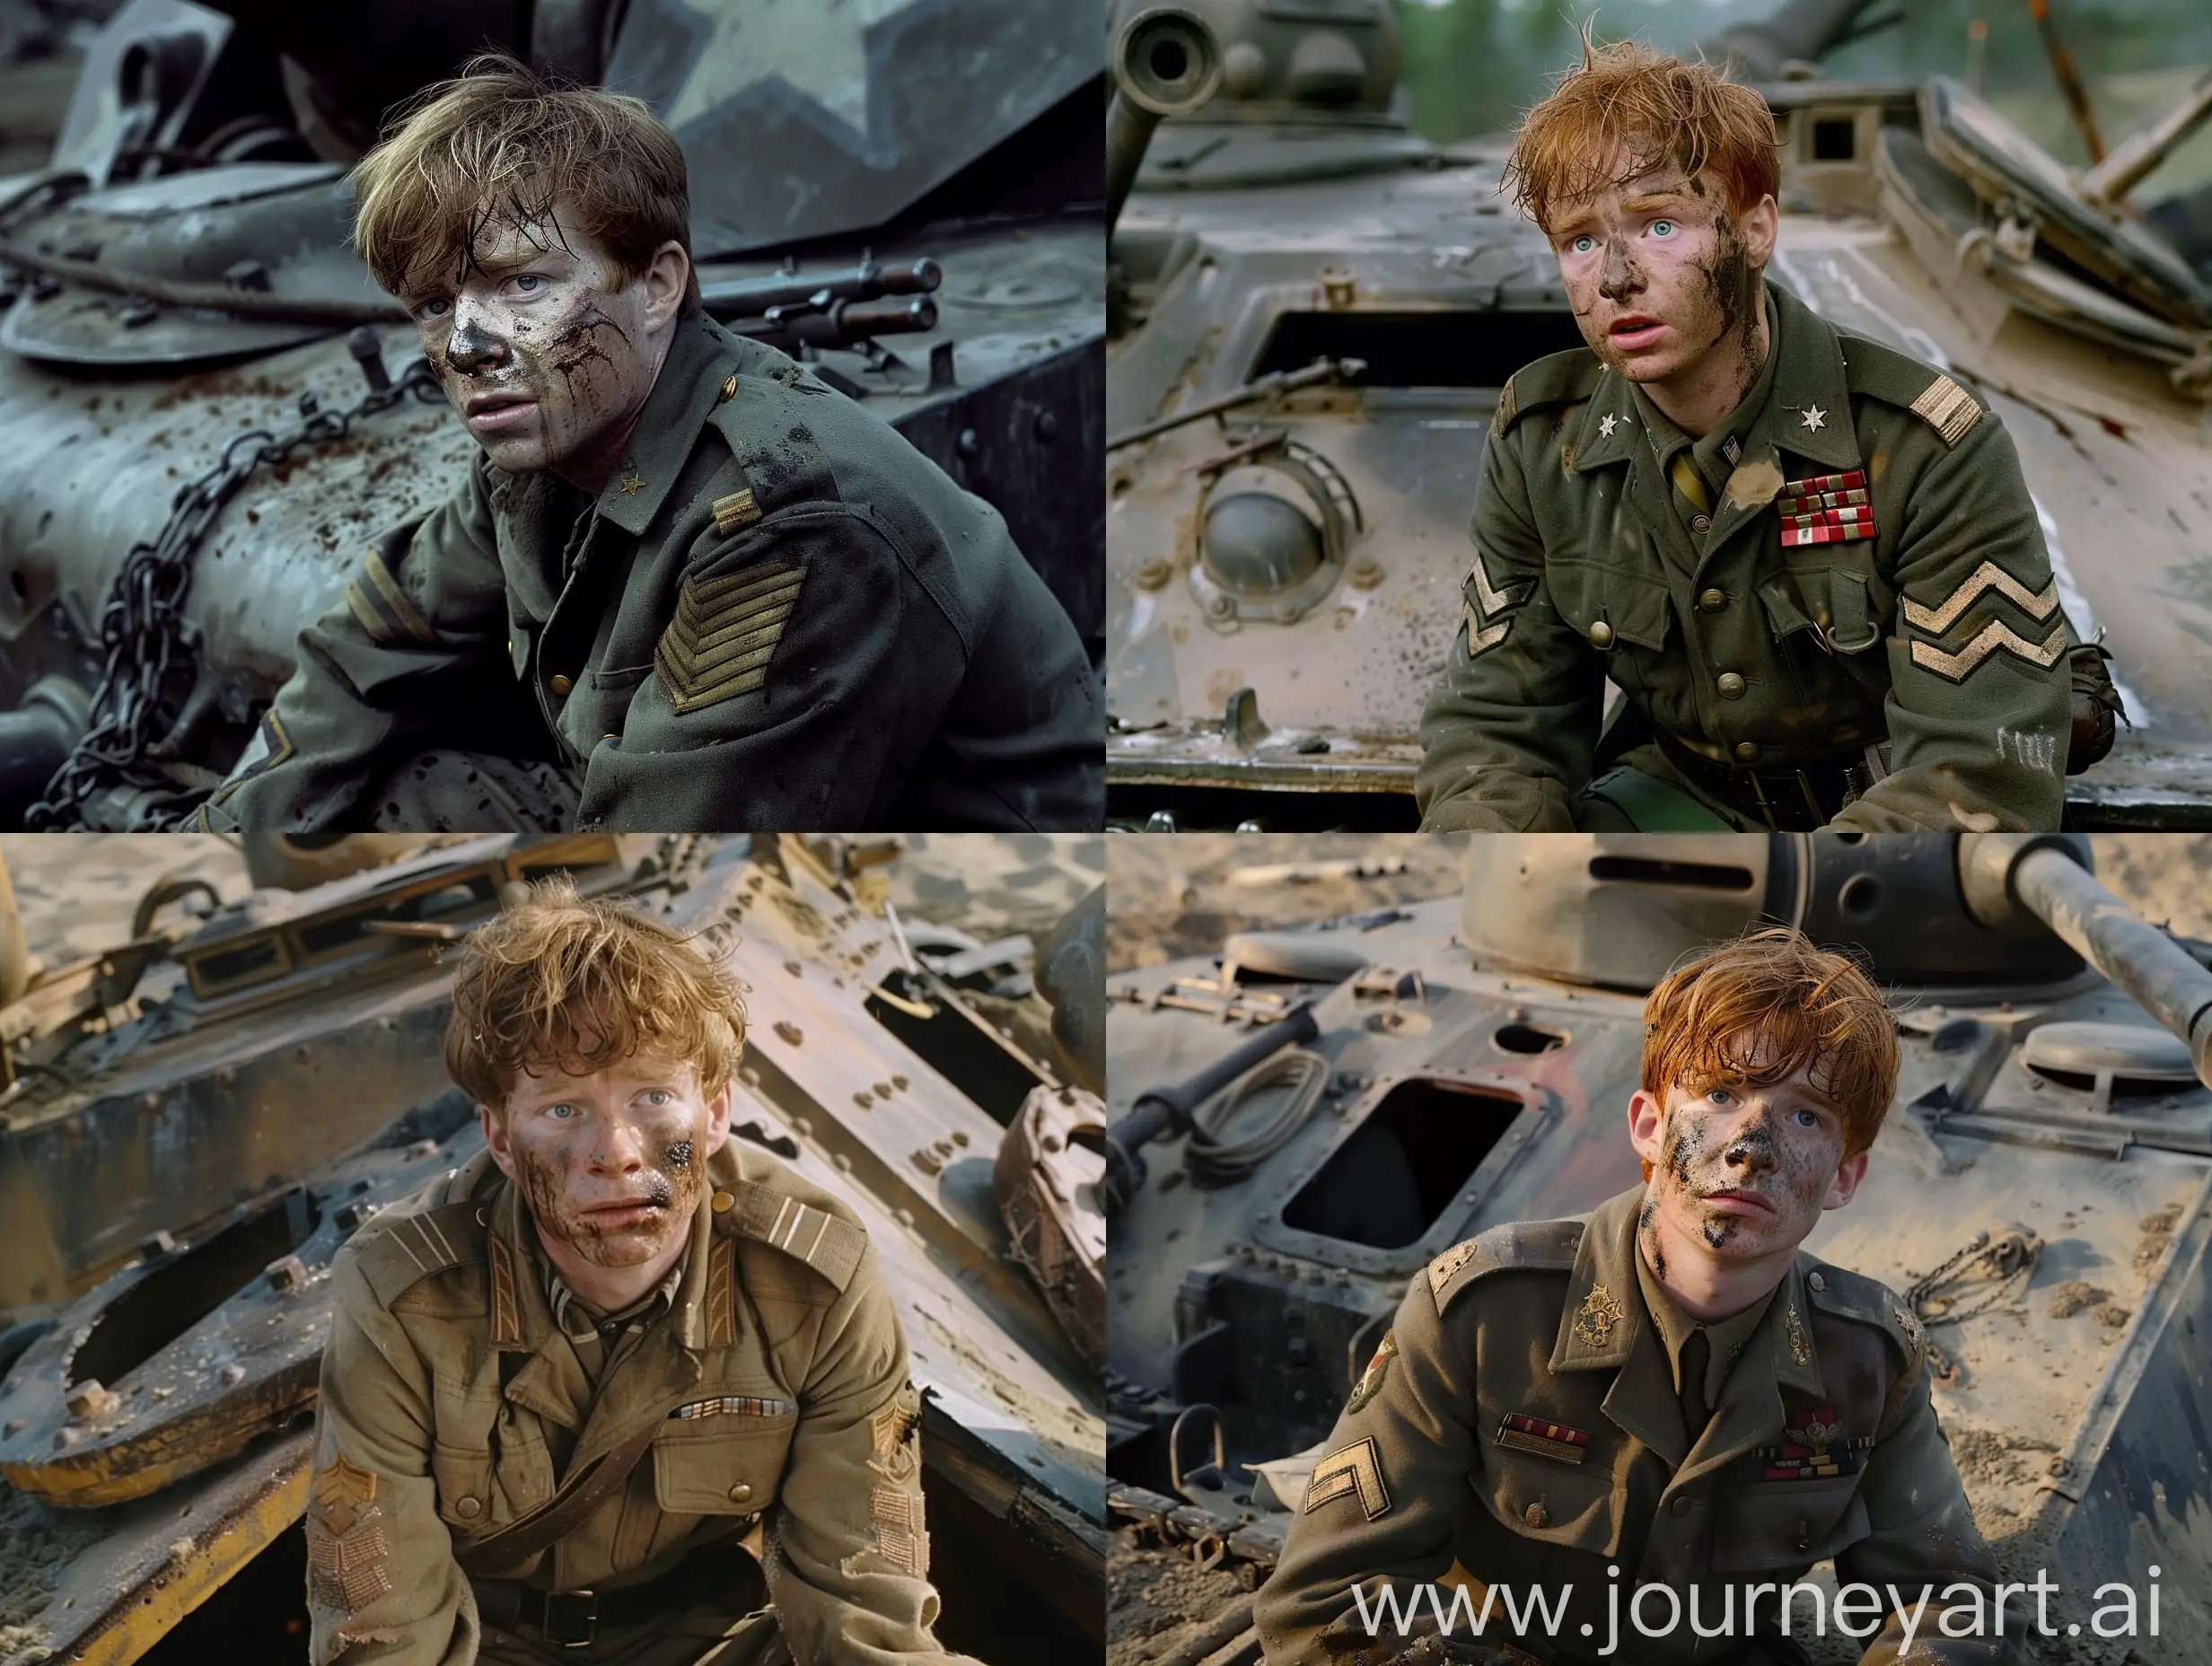 Ron-Weasley-in-WW2-American-Military-Uniform-on-Broken-Sherman-Tank